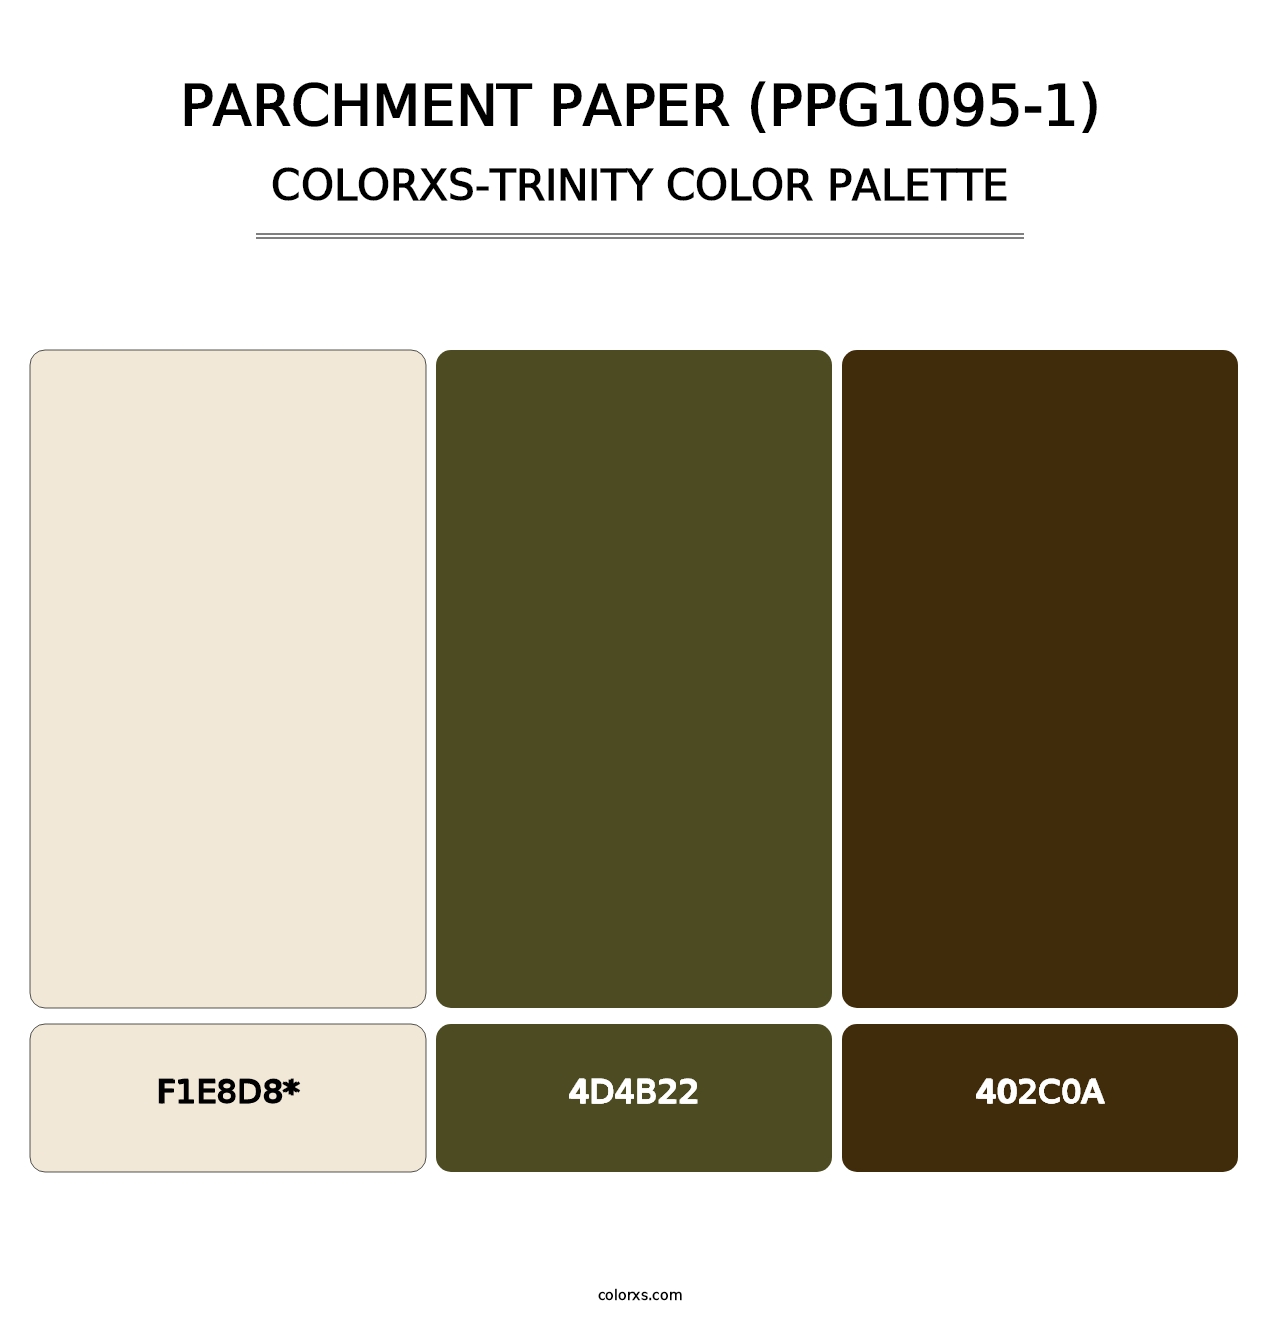 Parchment Paper (PPG1095-1) - Colorxs Trinity Palette